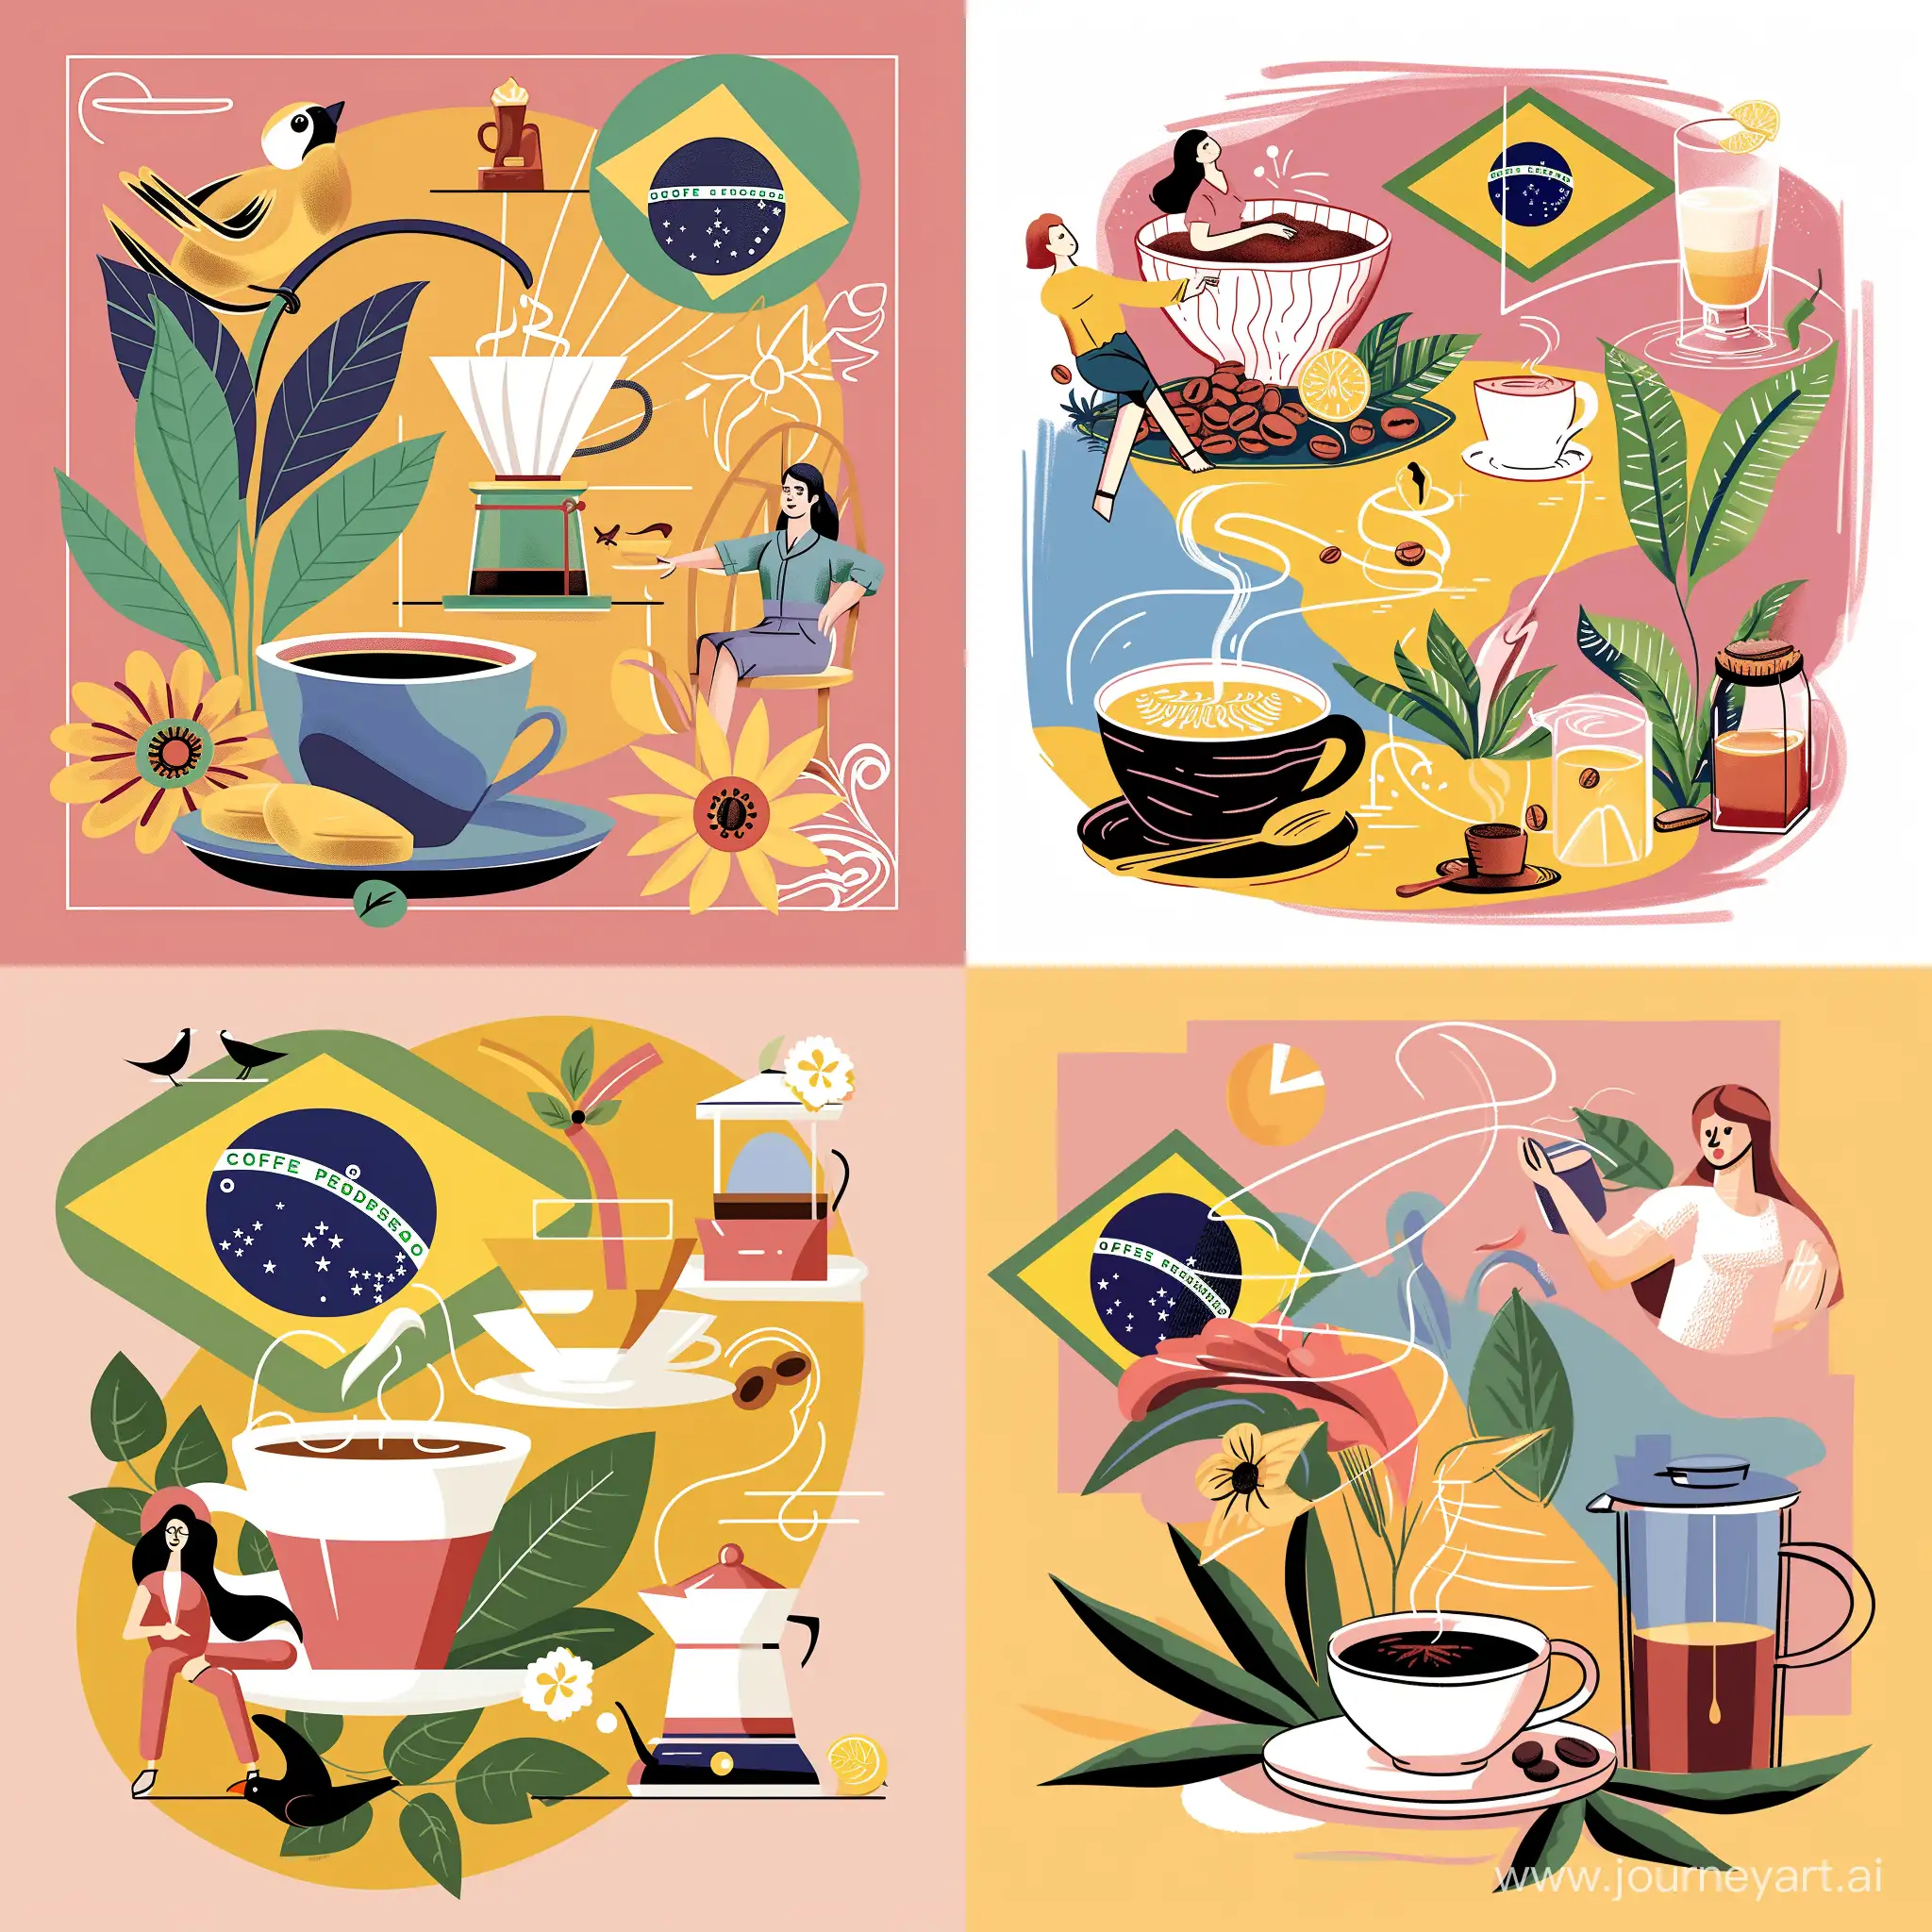 Иллюстрация кофе и символы Бразилии - sref https://cdn.dribbble.com/userupload/5488706/file/original-eaad259c961cf75cf305063e953029b6.png?resize=1905x1905